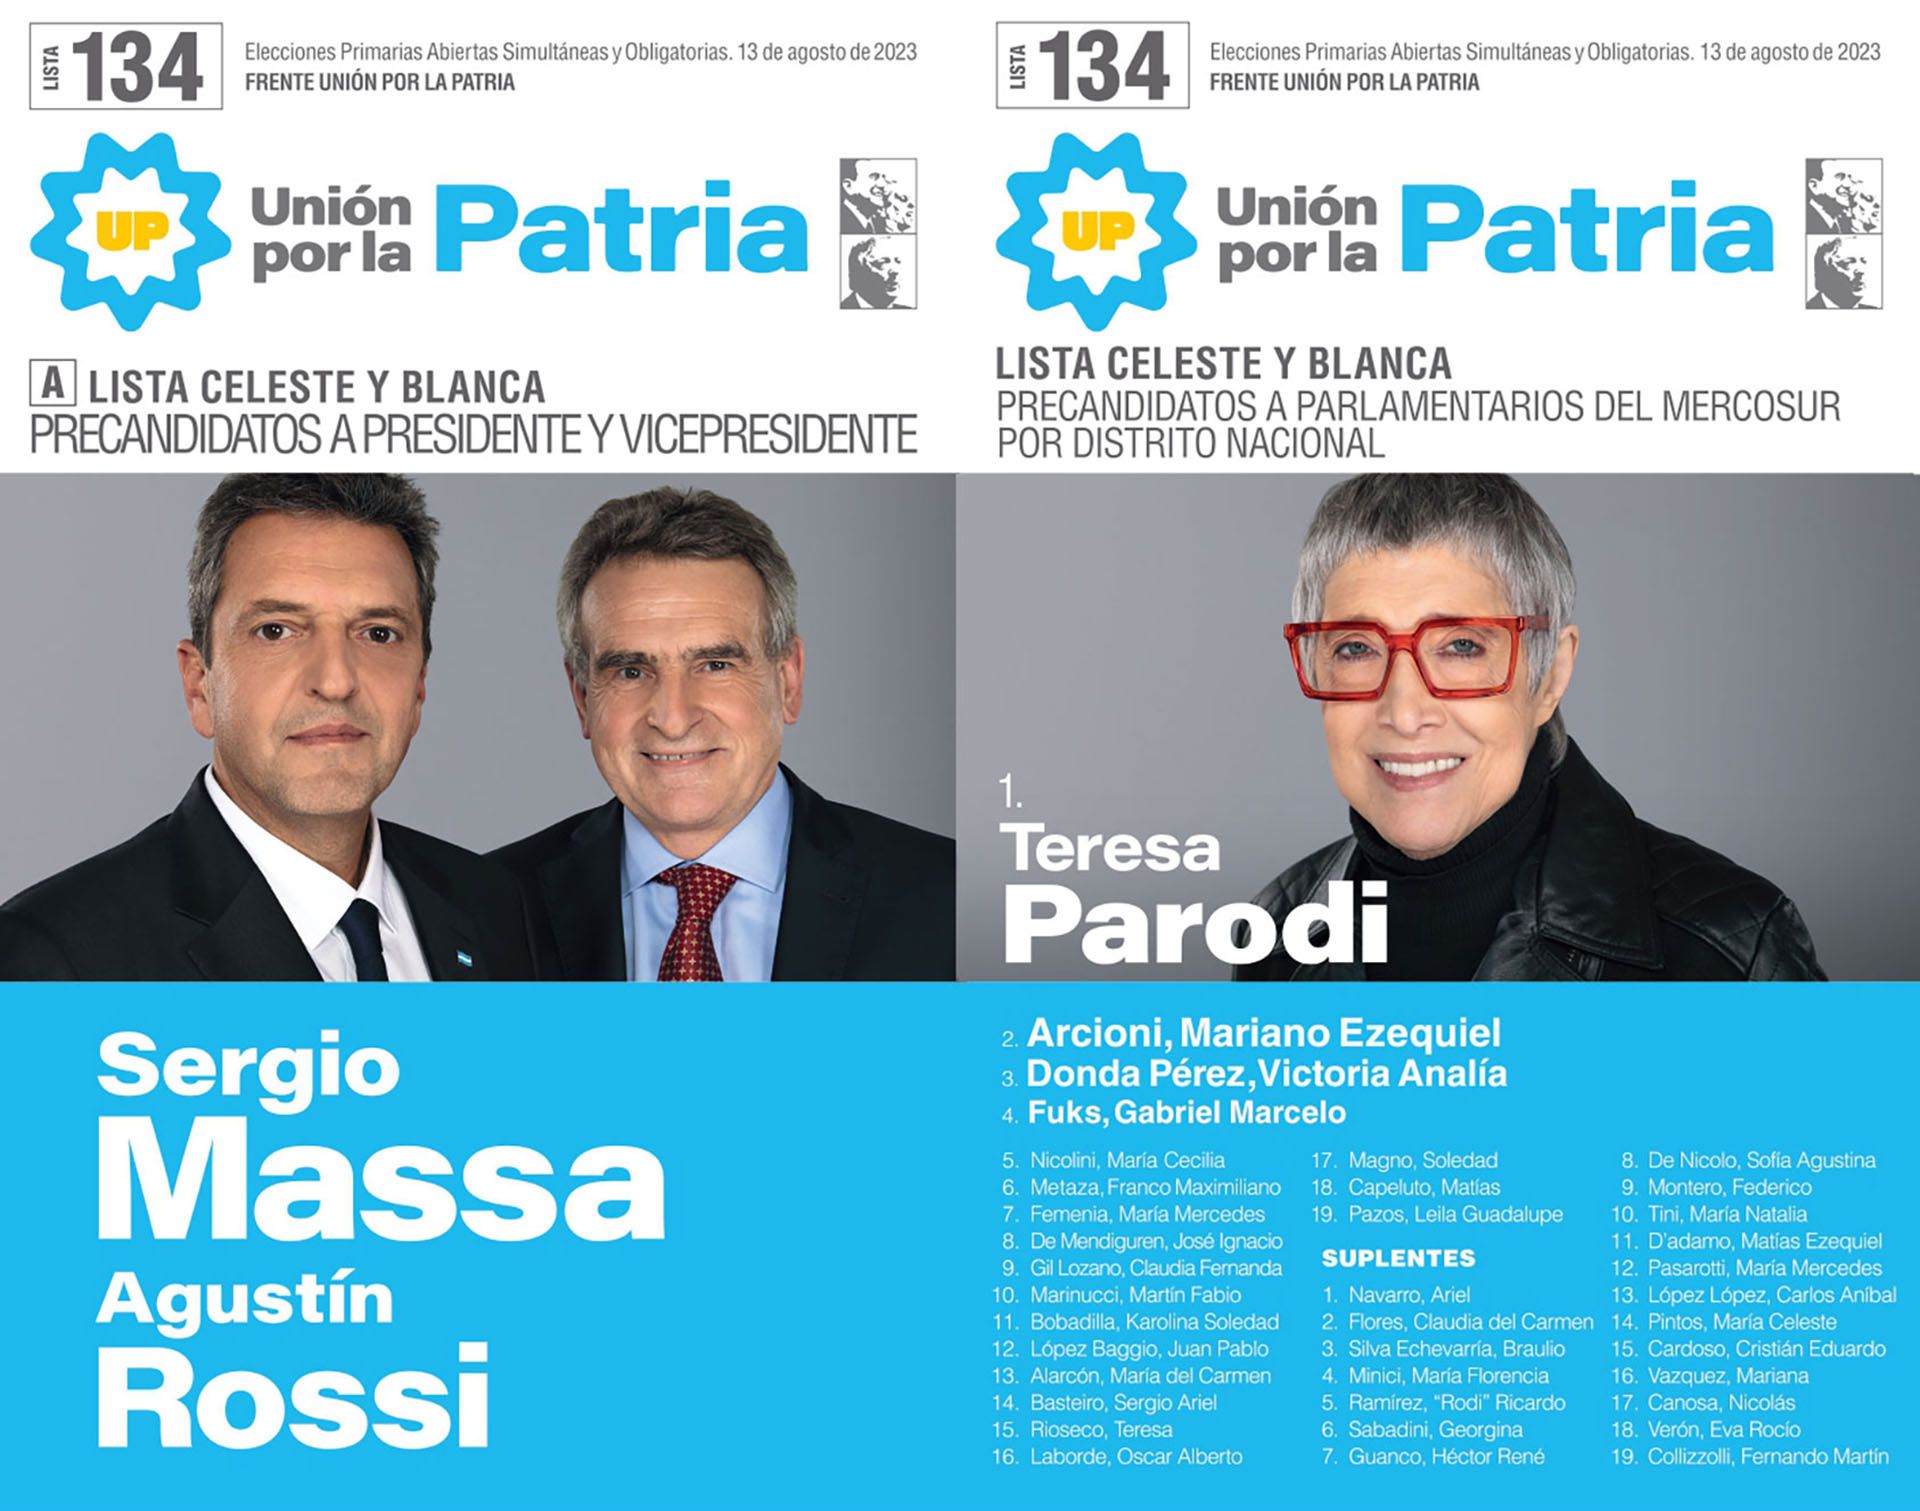 Sergio Massa's ballot for PASO 2023
